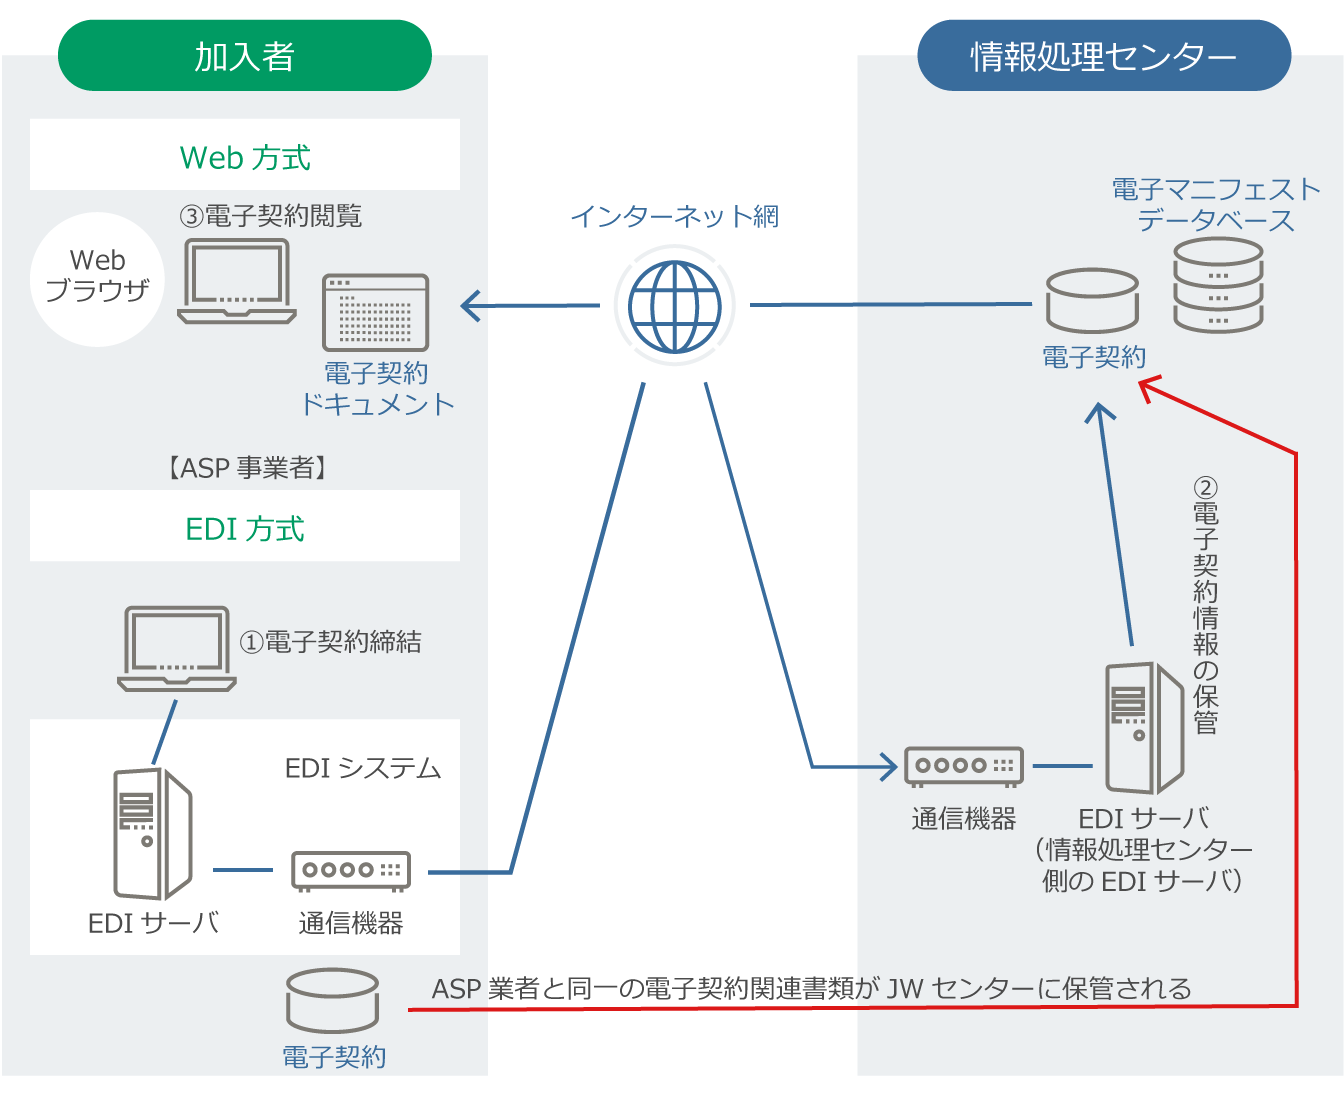 電子契約(保管・検索・閲覧)機能の概要 | 公益財団法人 日本産業廃棄物